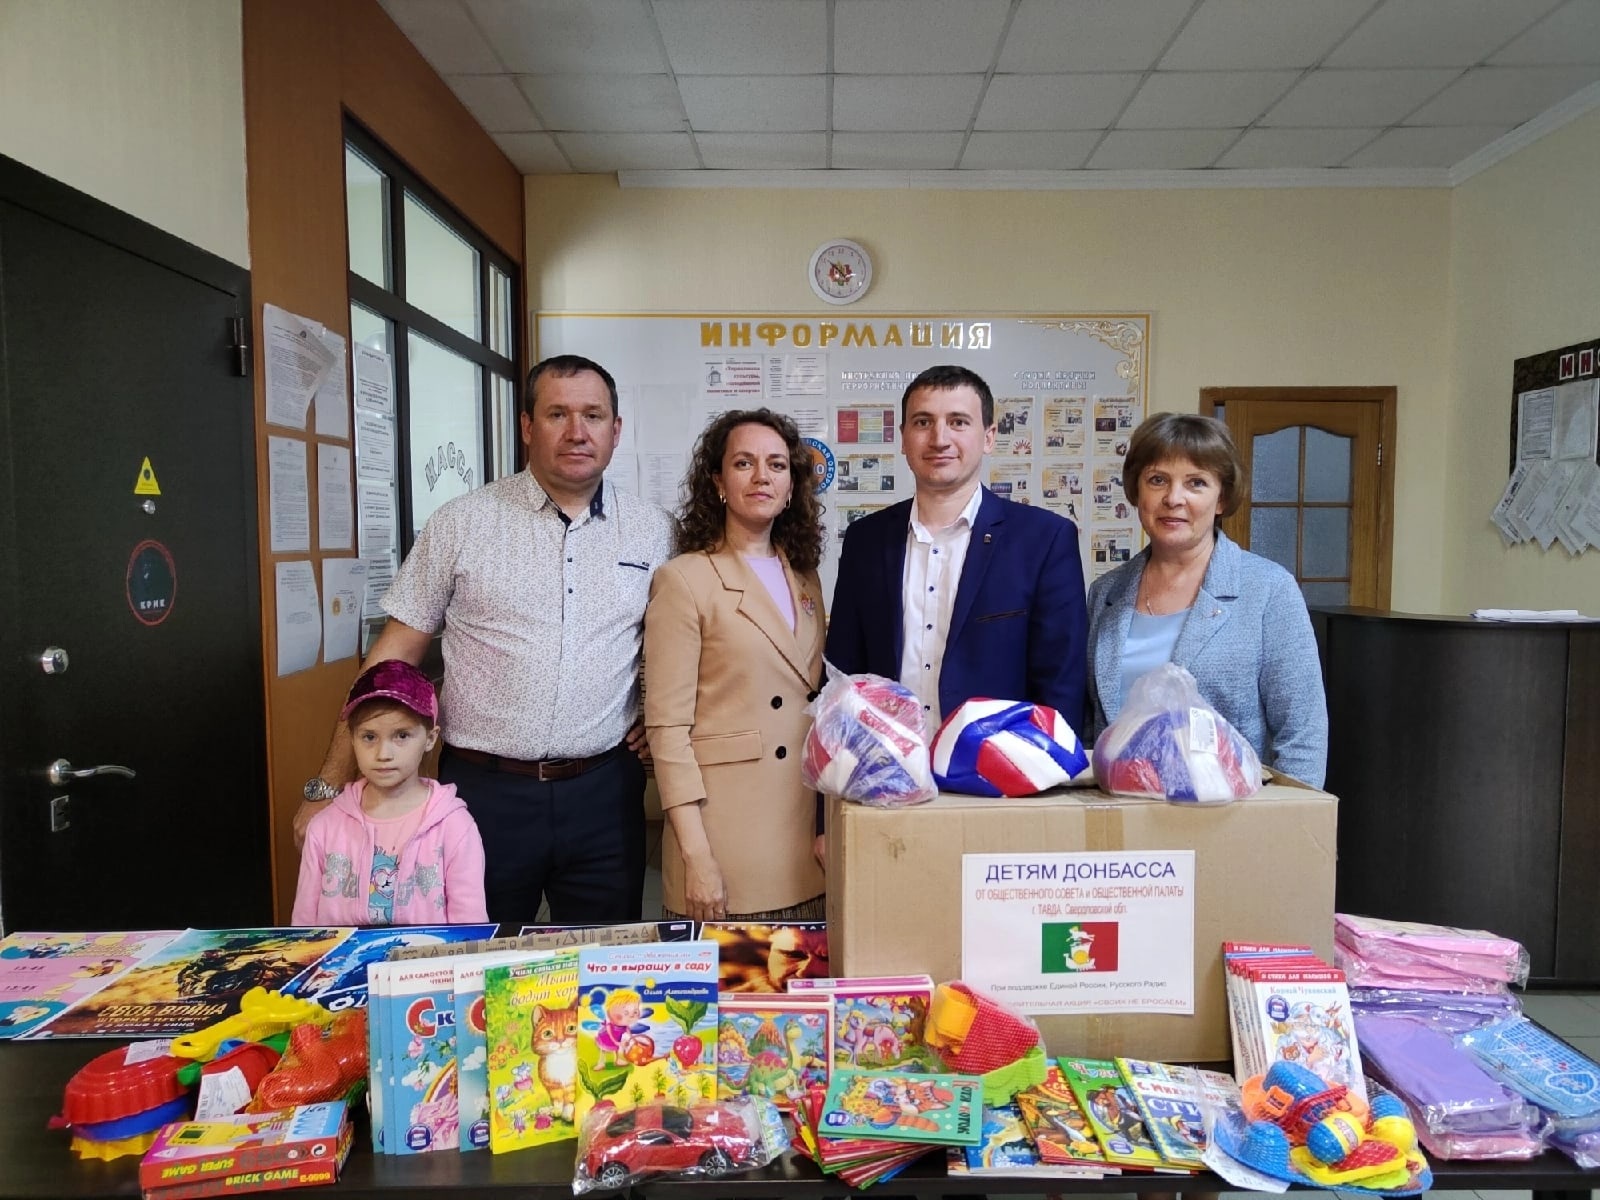 Представители Партии "Единая Россия" совместно с членами общественного совета полиции организовали Акцию "Подарки детям Донбасса"